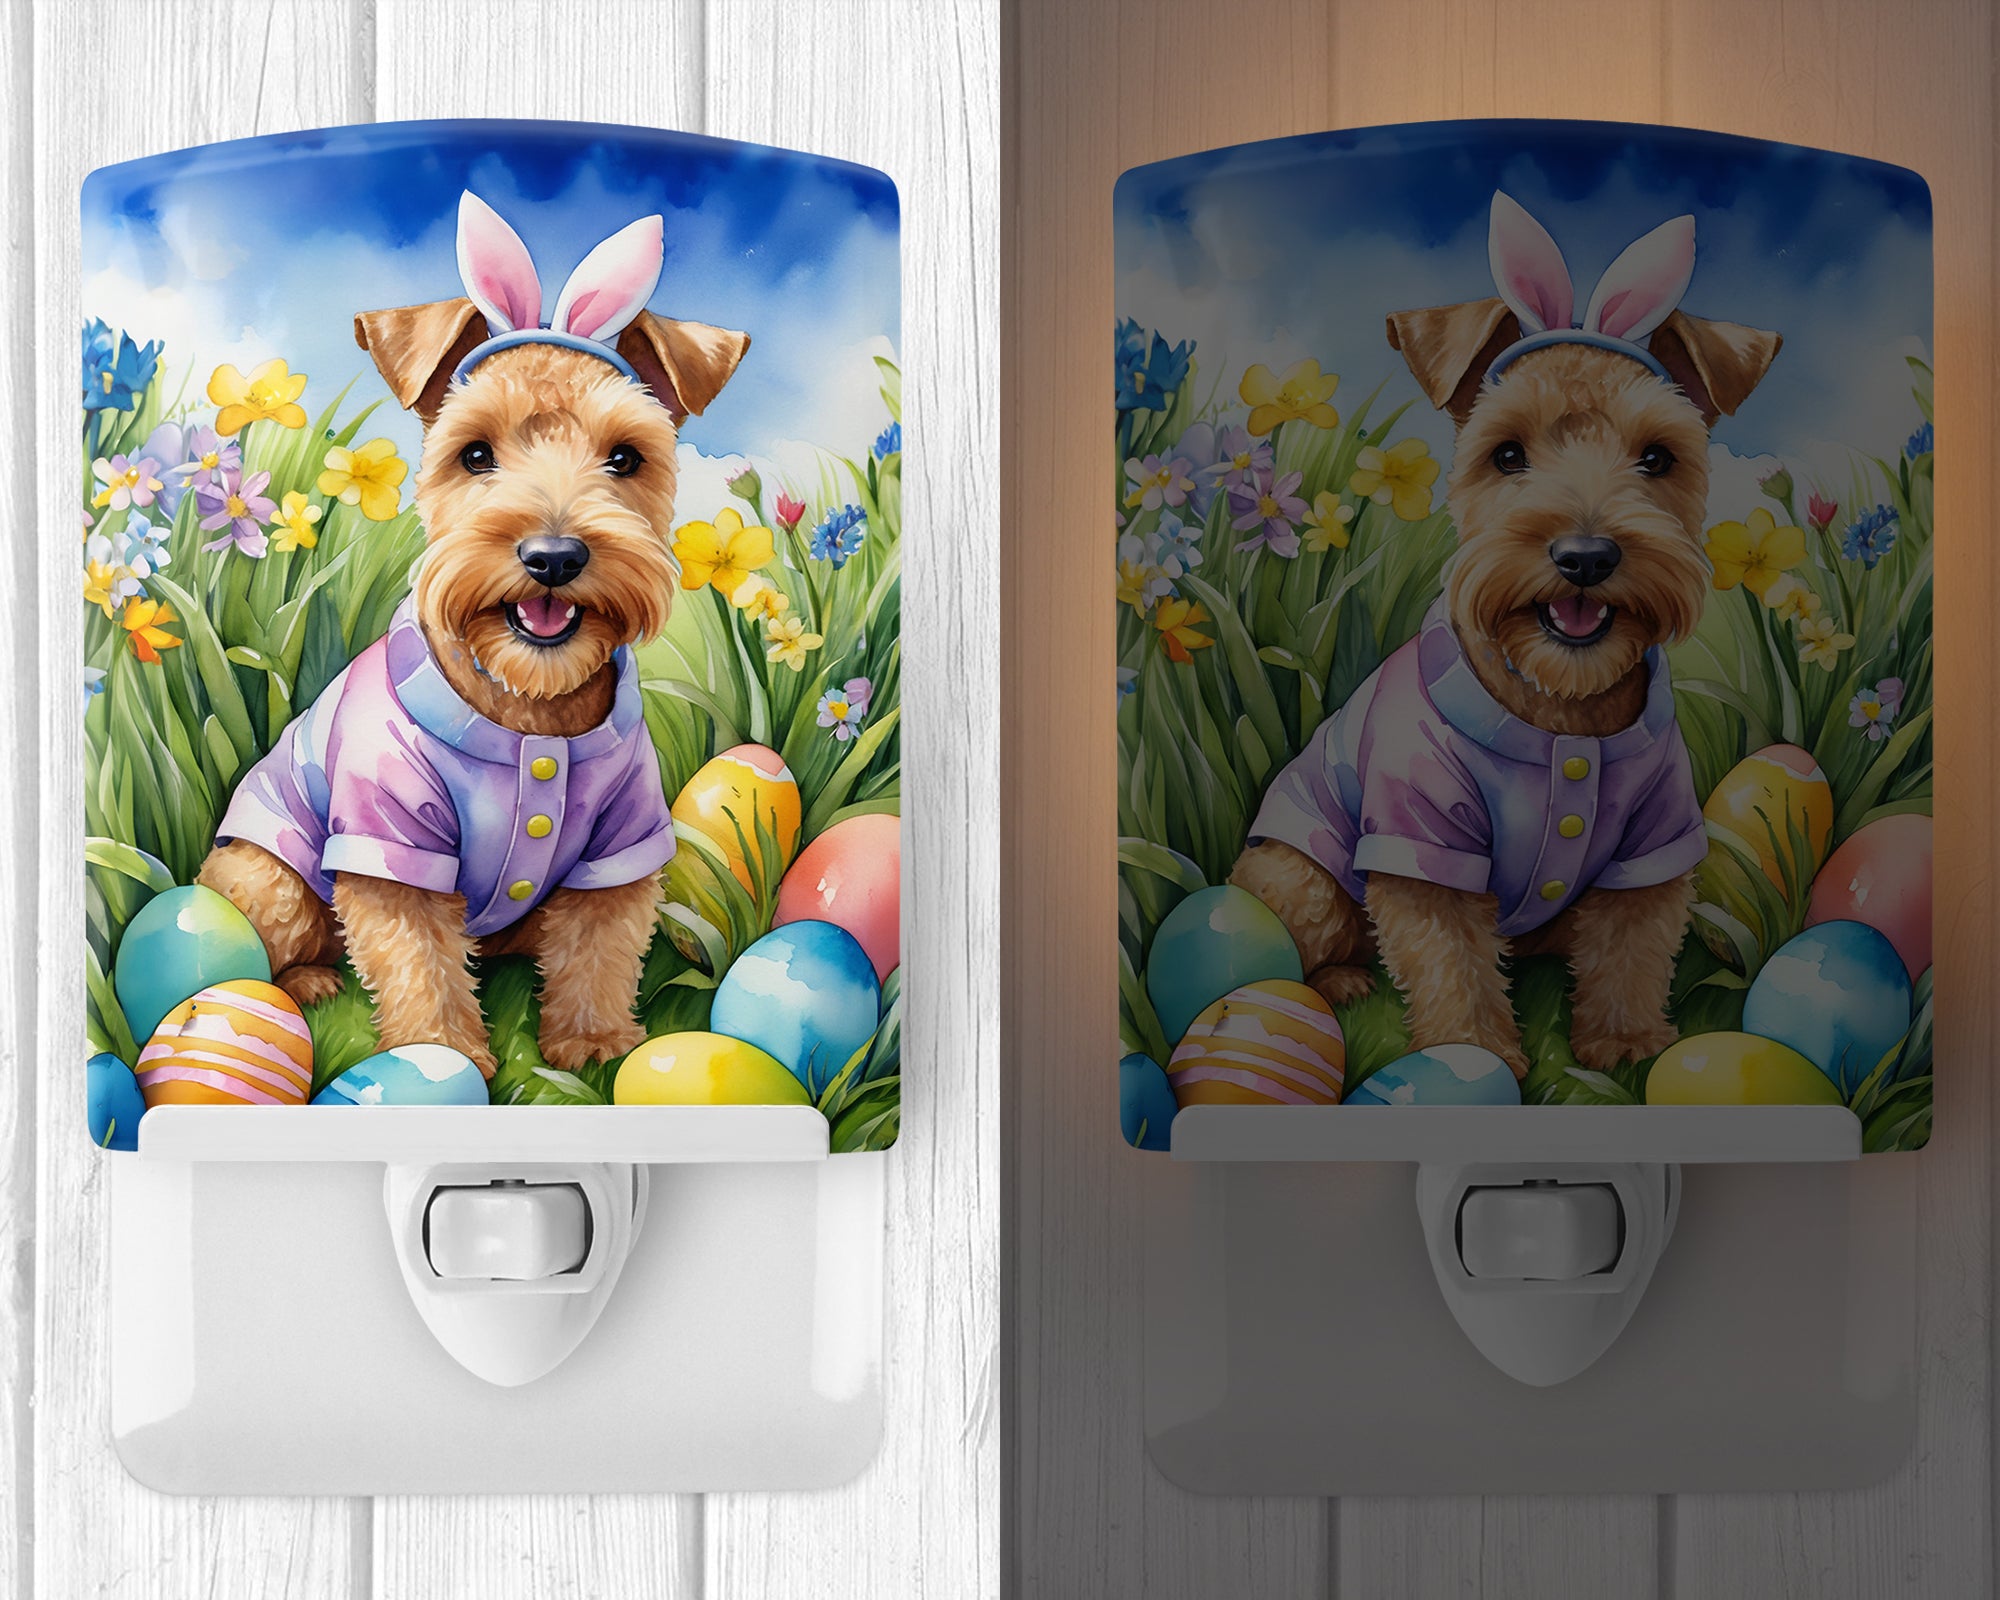 Buy this Lakeland Terrier Easter Egg Hunt Ceramic Night Light